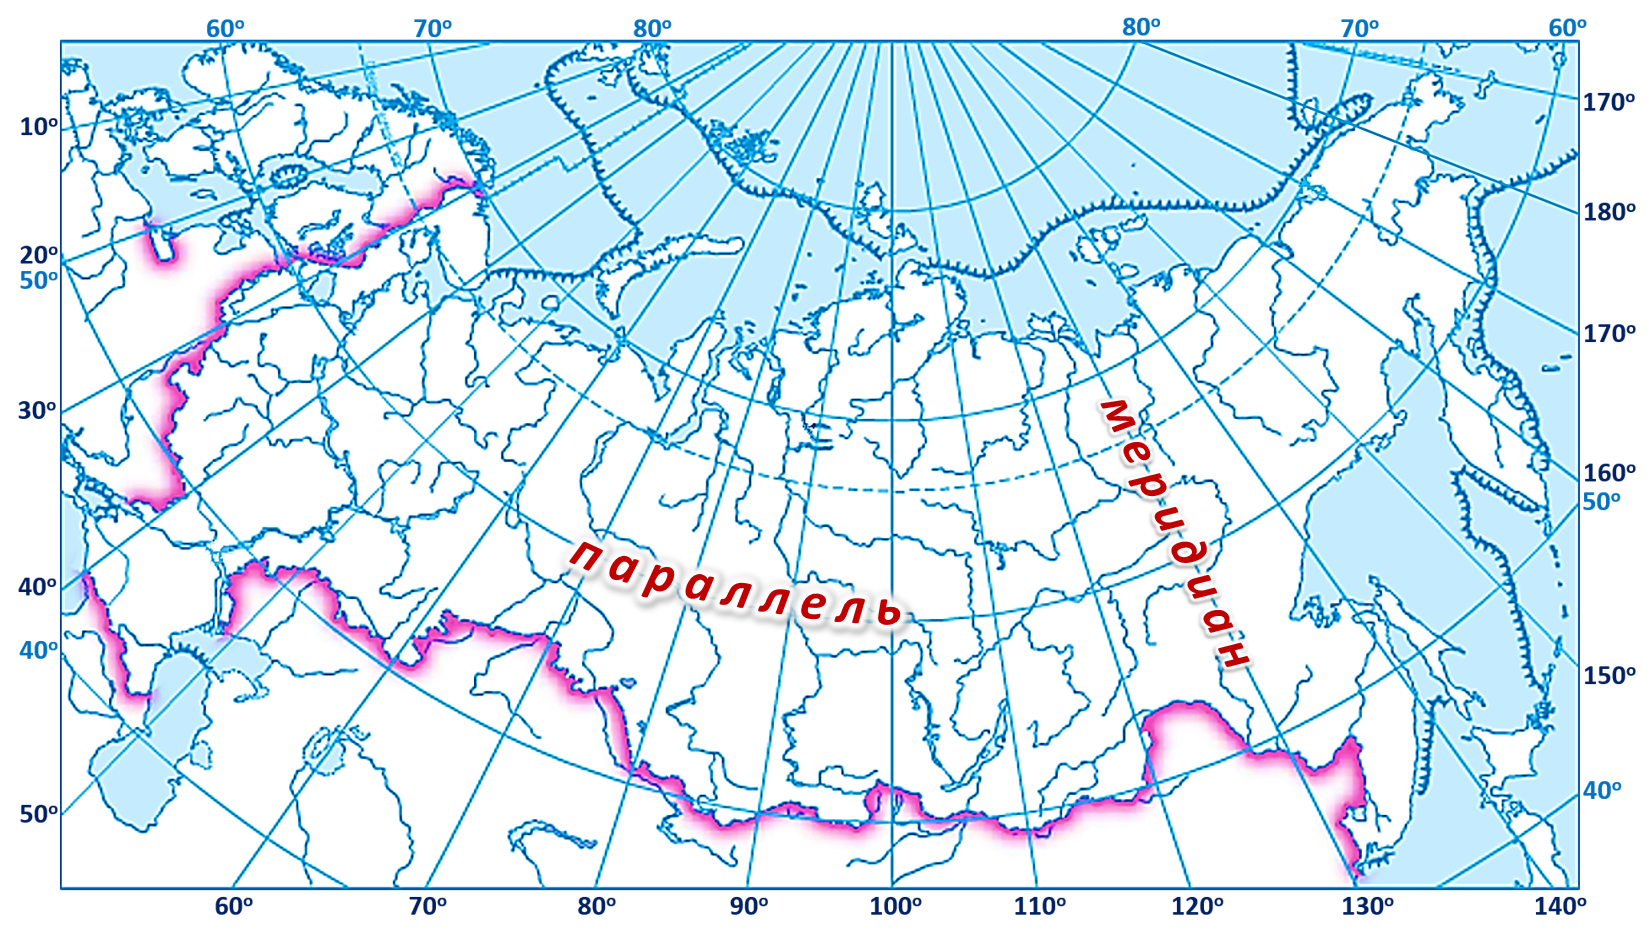 Карта россии с широтами и долготами. 60 Параллель 60 Меридиан на карте. Карта России с широтой и долготой и городами. Широта 60 градусов на карте России.